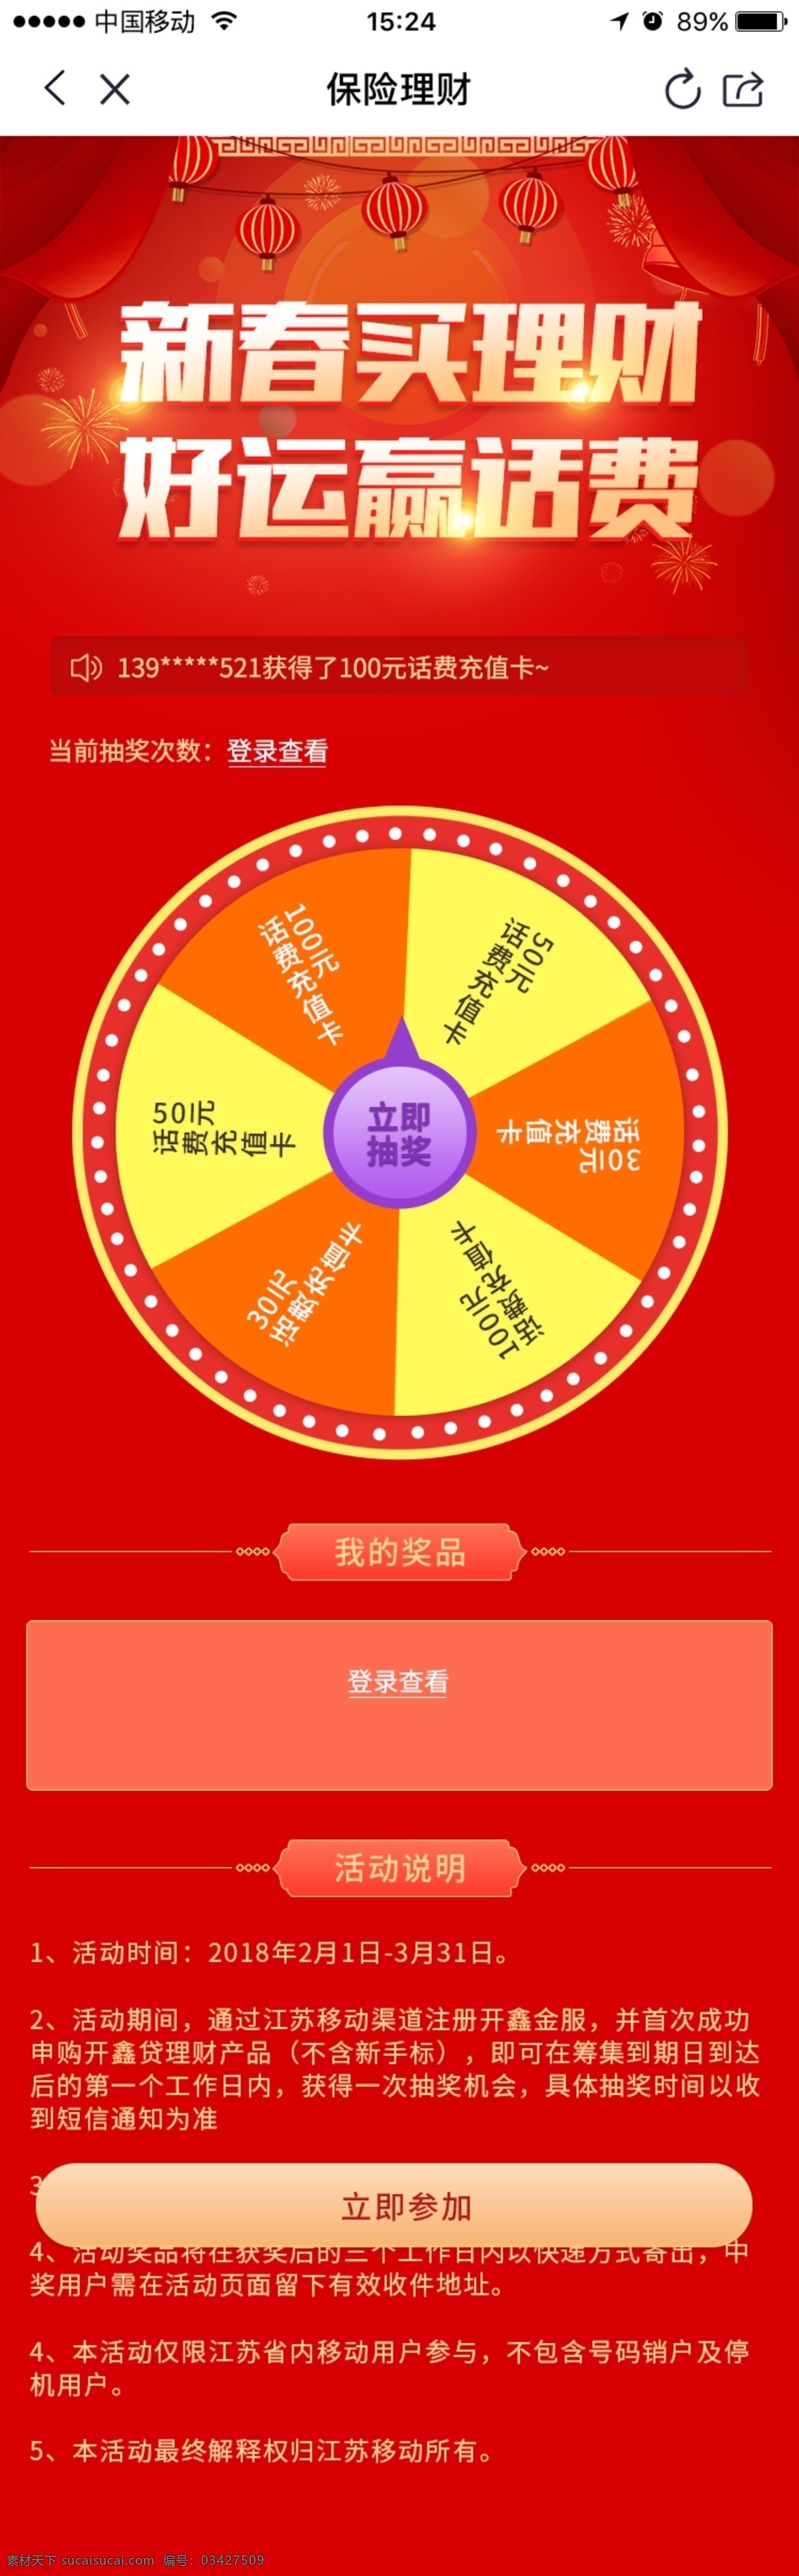 买 理财 送 话费 春节 活动 主页 红色 转盘 微信 卡通 新春 赢话费 h5